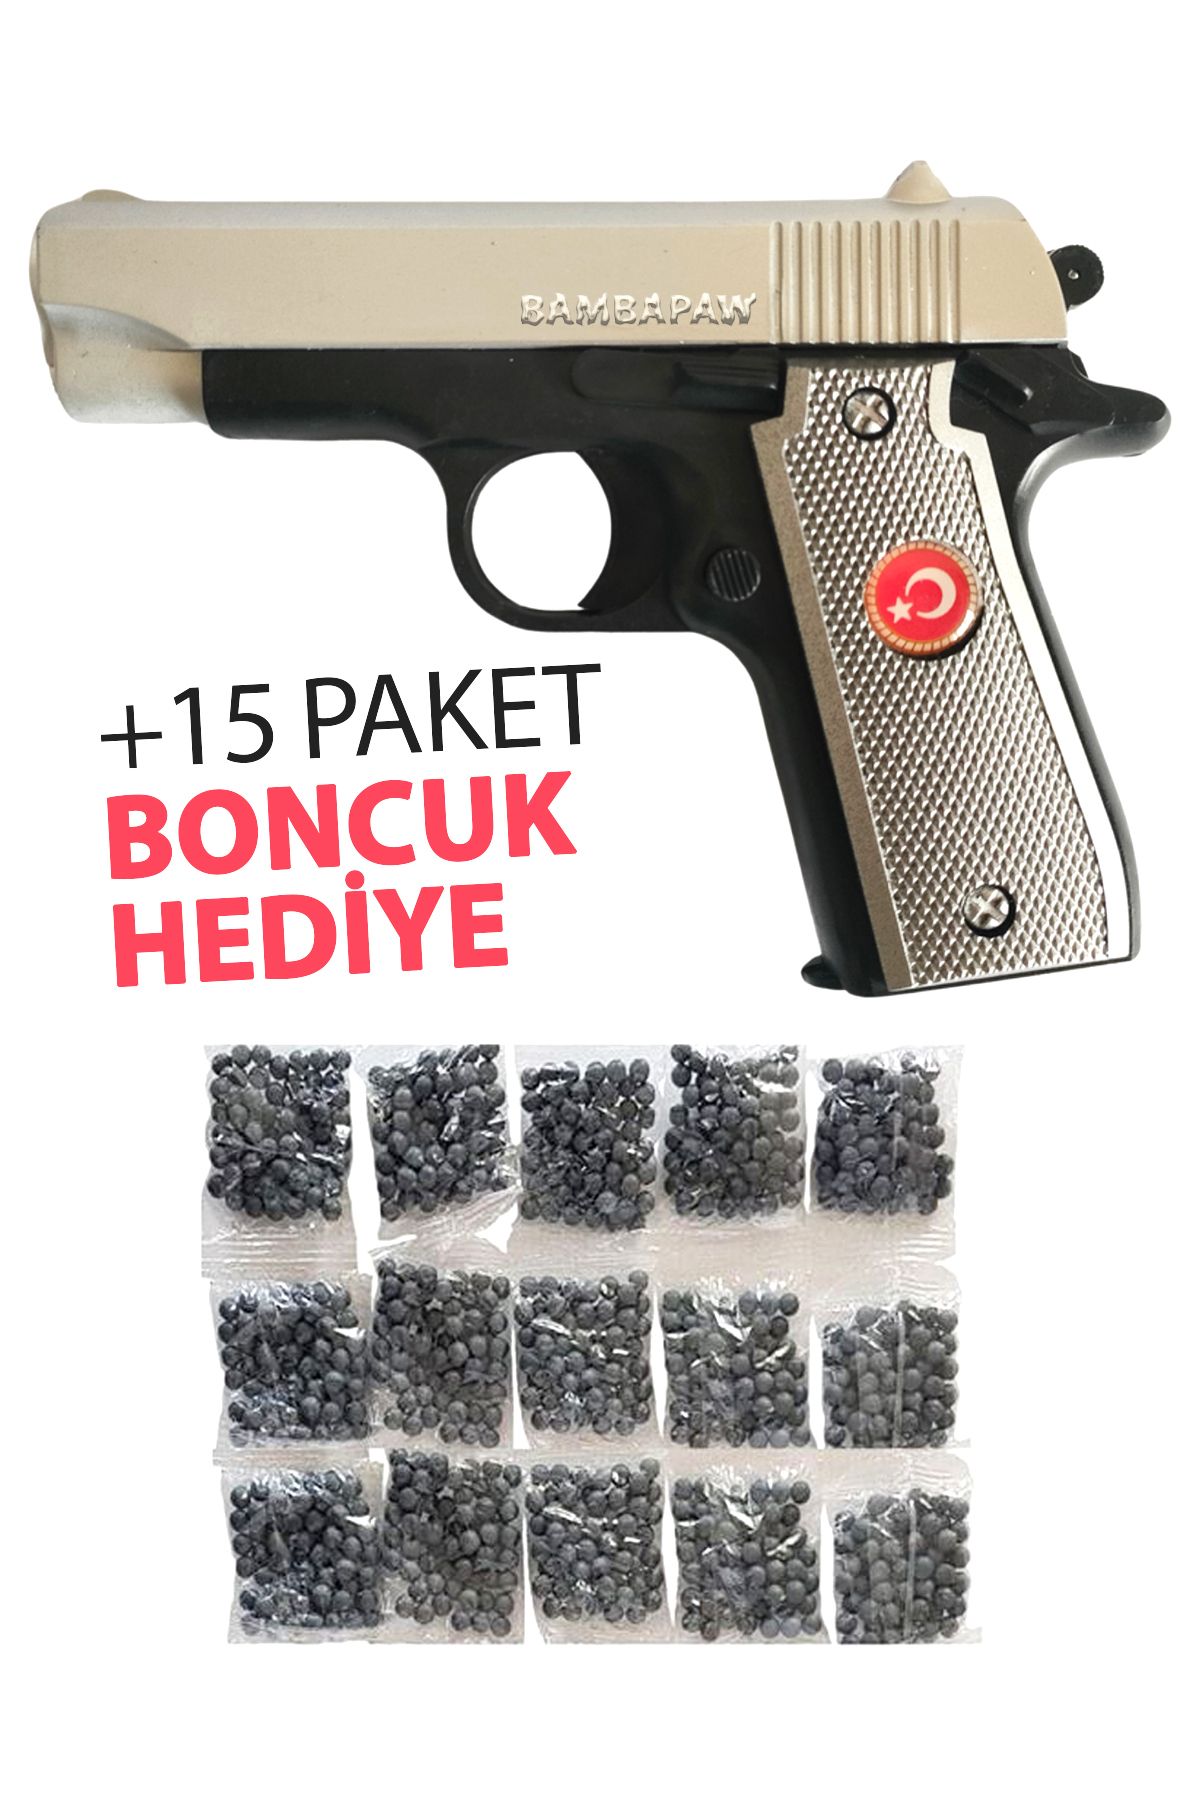 BambaPaw YENİ! Boncuk Atan Türk Bayraklı Gümüş Oyuncak Tabanca - Boncuklu Oyuncak Tabanca + 15 Paket Boncuk